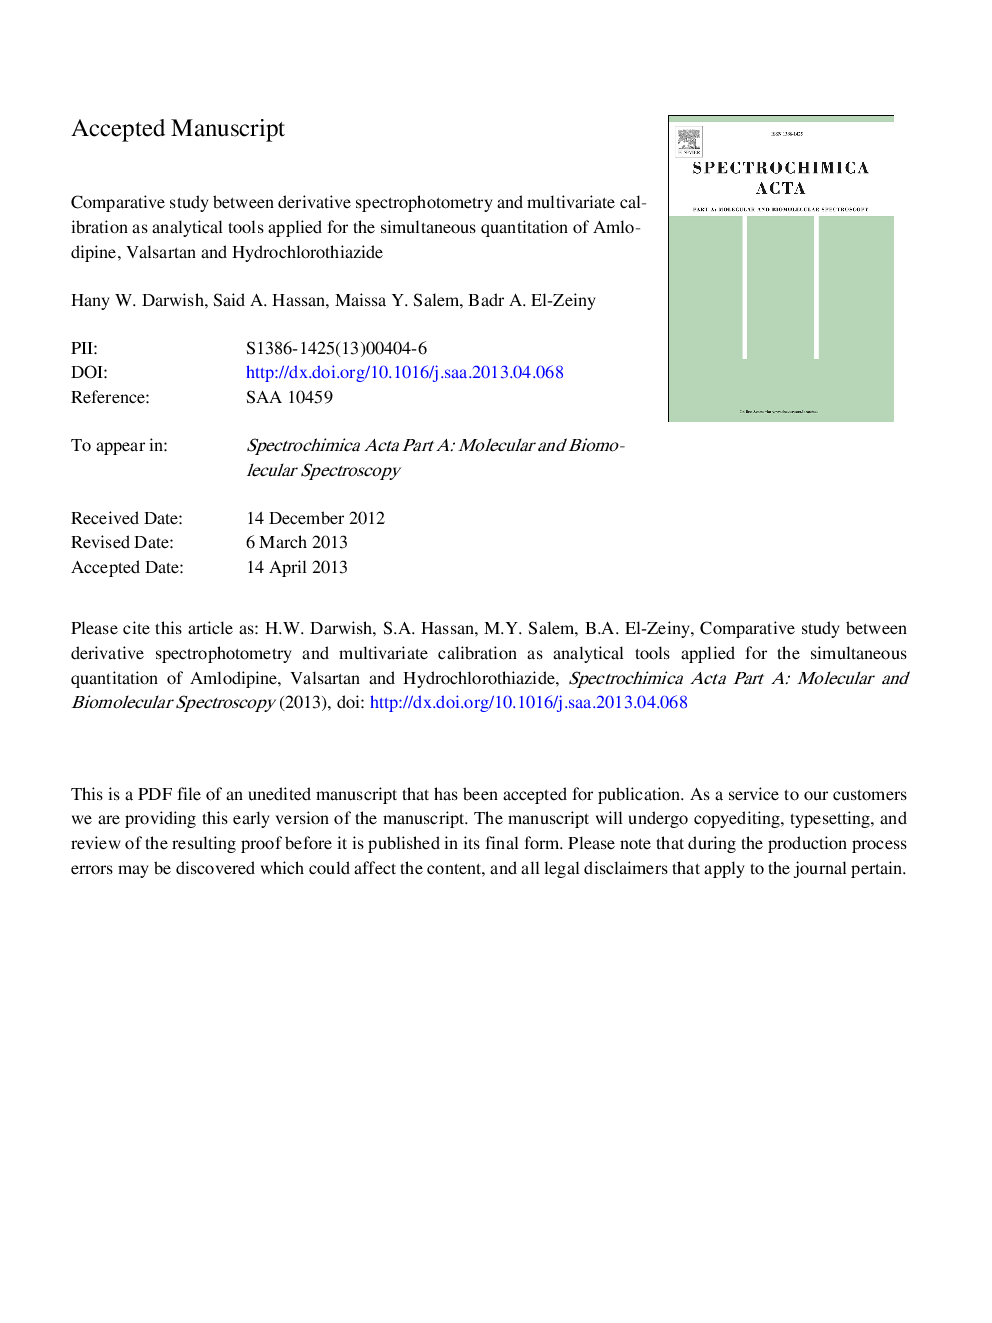 مقایسه ای از اسپکتروفتومتری مشتق شده و کالیبراسیون چند متغیری به عنوان ابزار تحلیلی برای اندازه گیری همزمان آملودیپین، واسارتان و هیدروکلروتیازید 